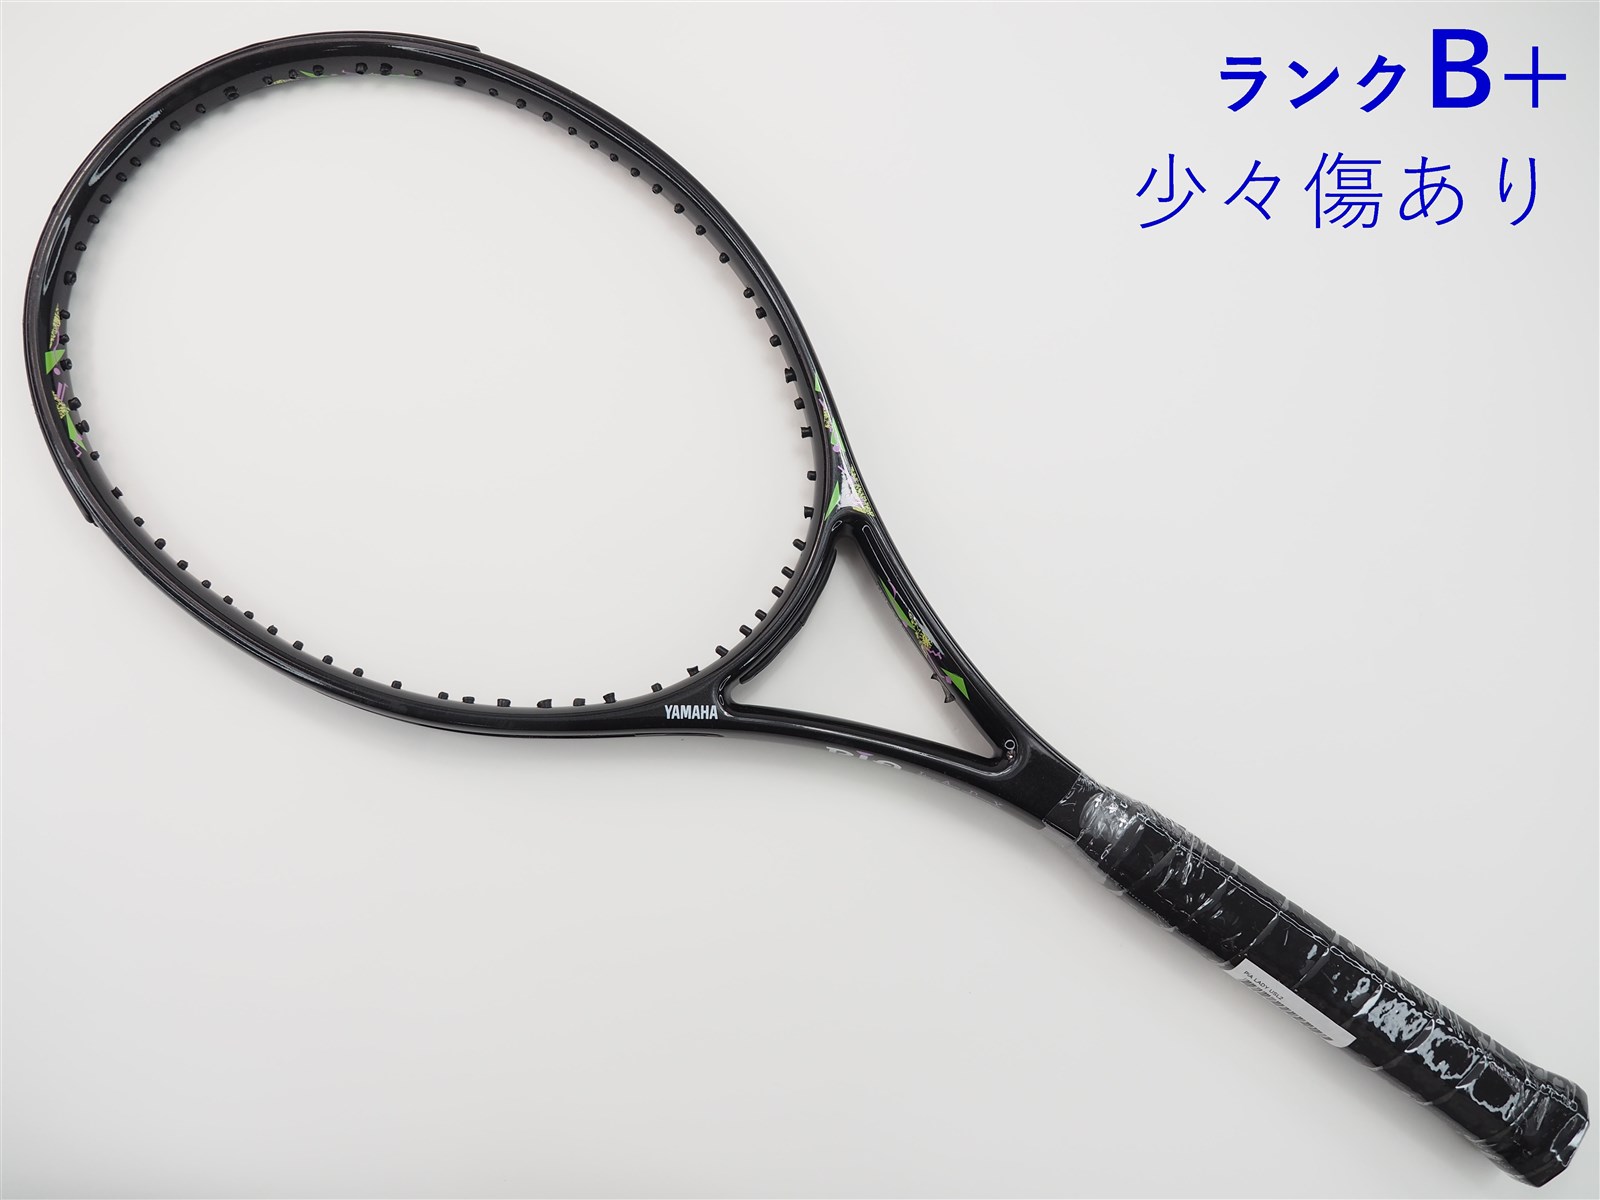 【中古】ヤマハ ピア レディーYAMAHA PiA LADY(USL2)【中古 テニスラケット】